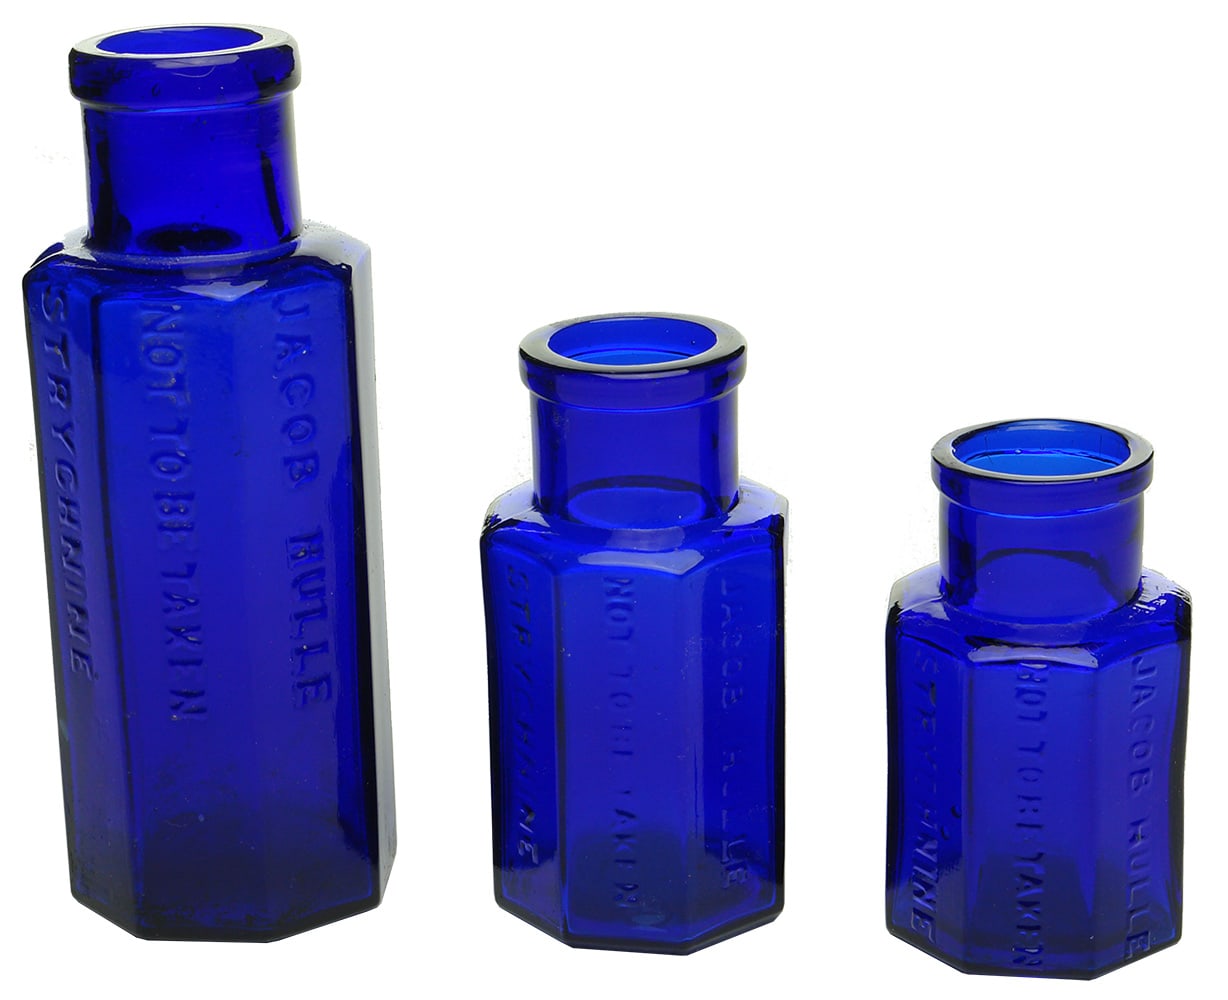 Jacob Hulle Strychnine Cobalt Blue Bottles